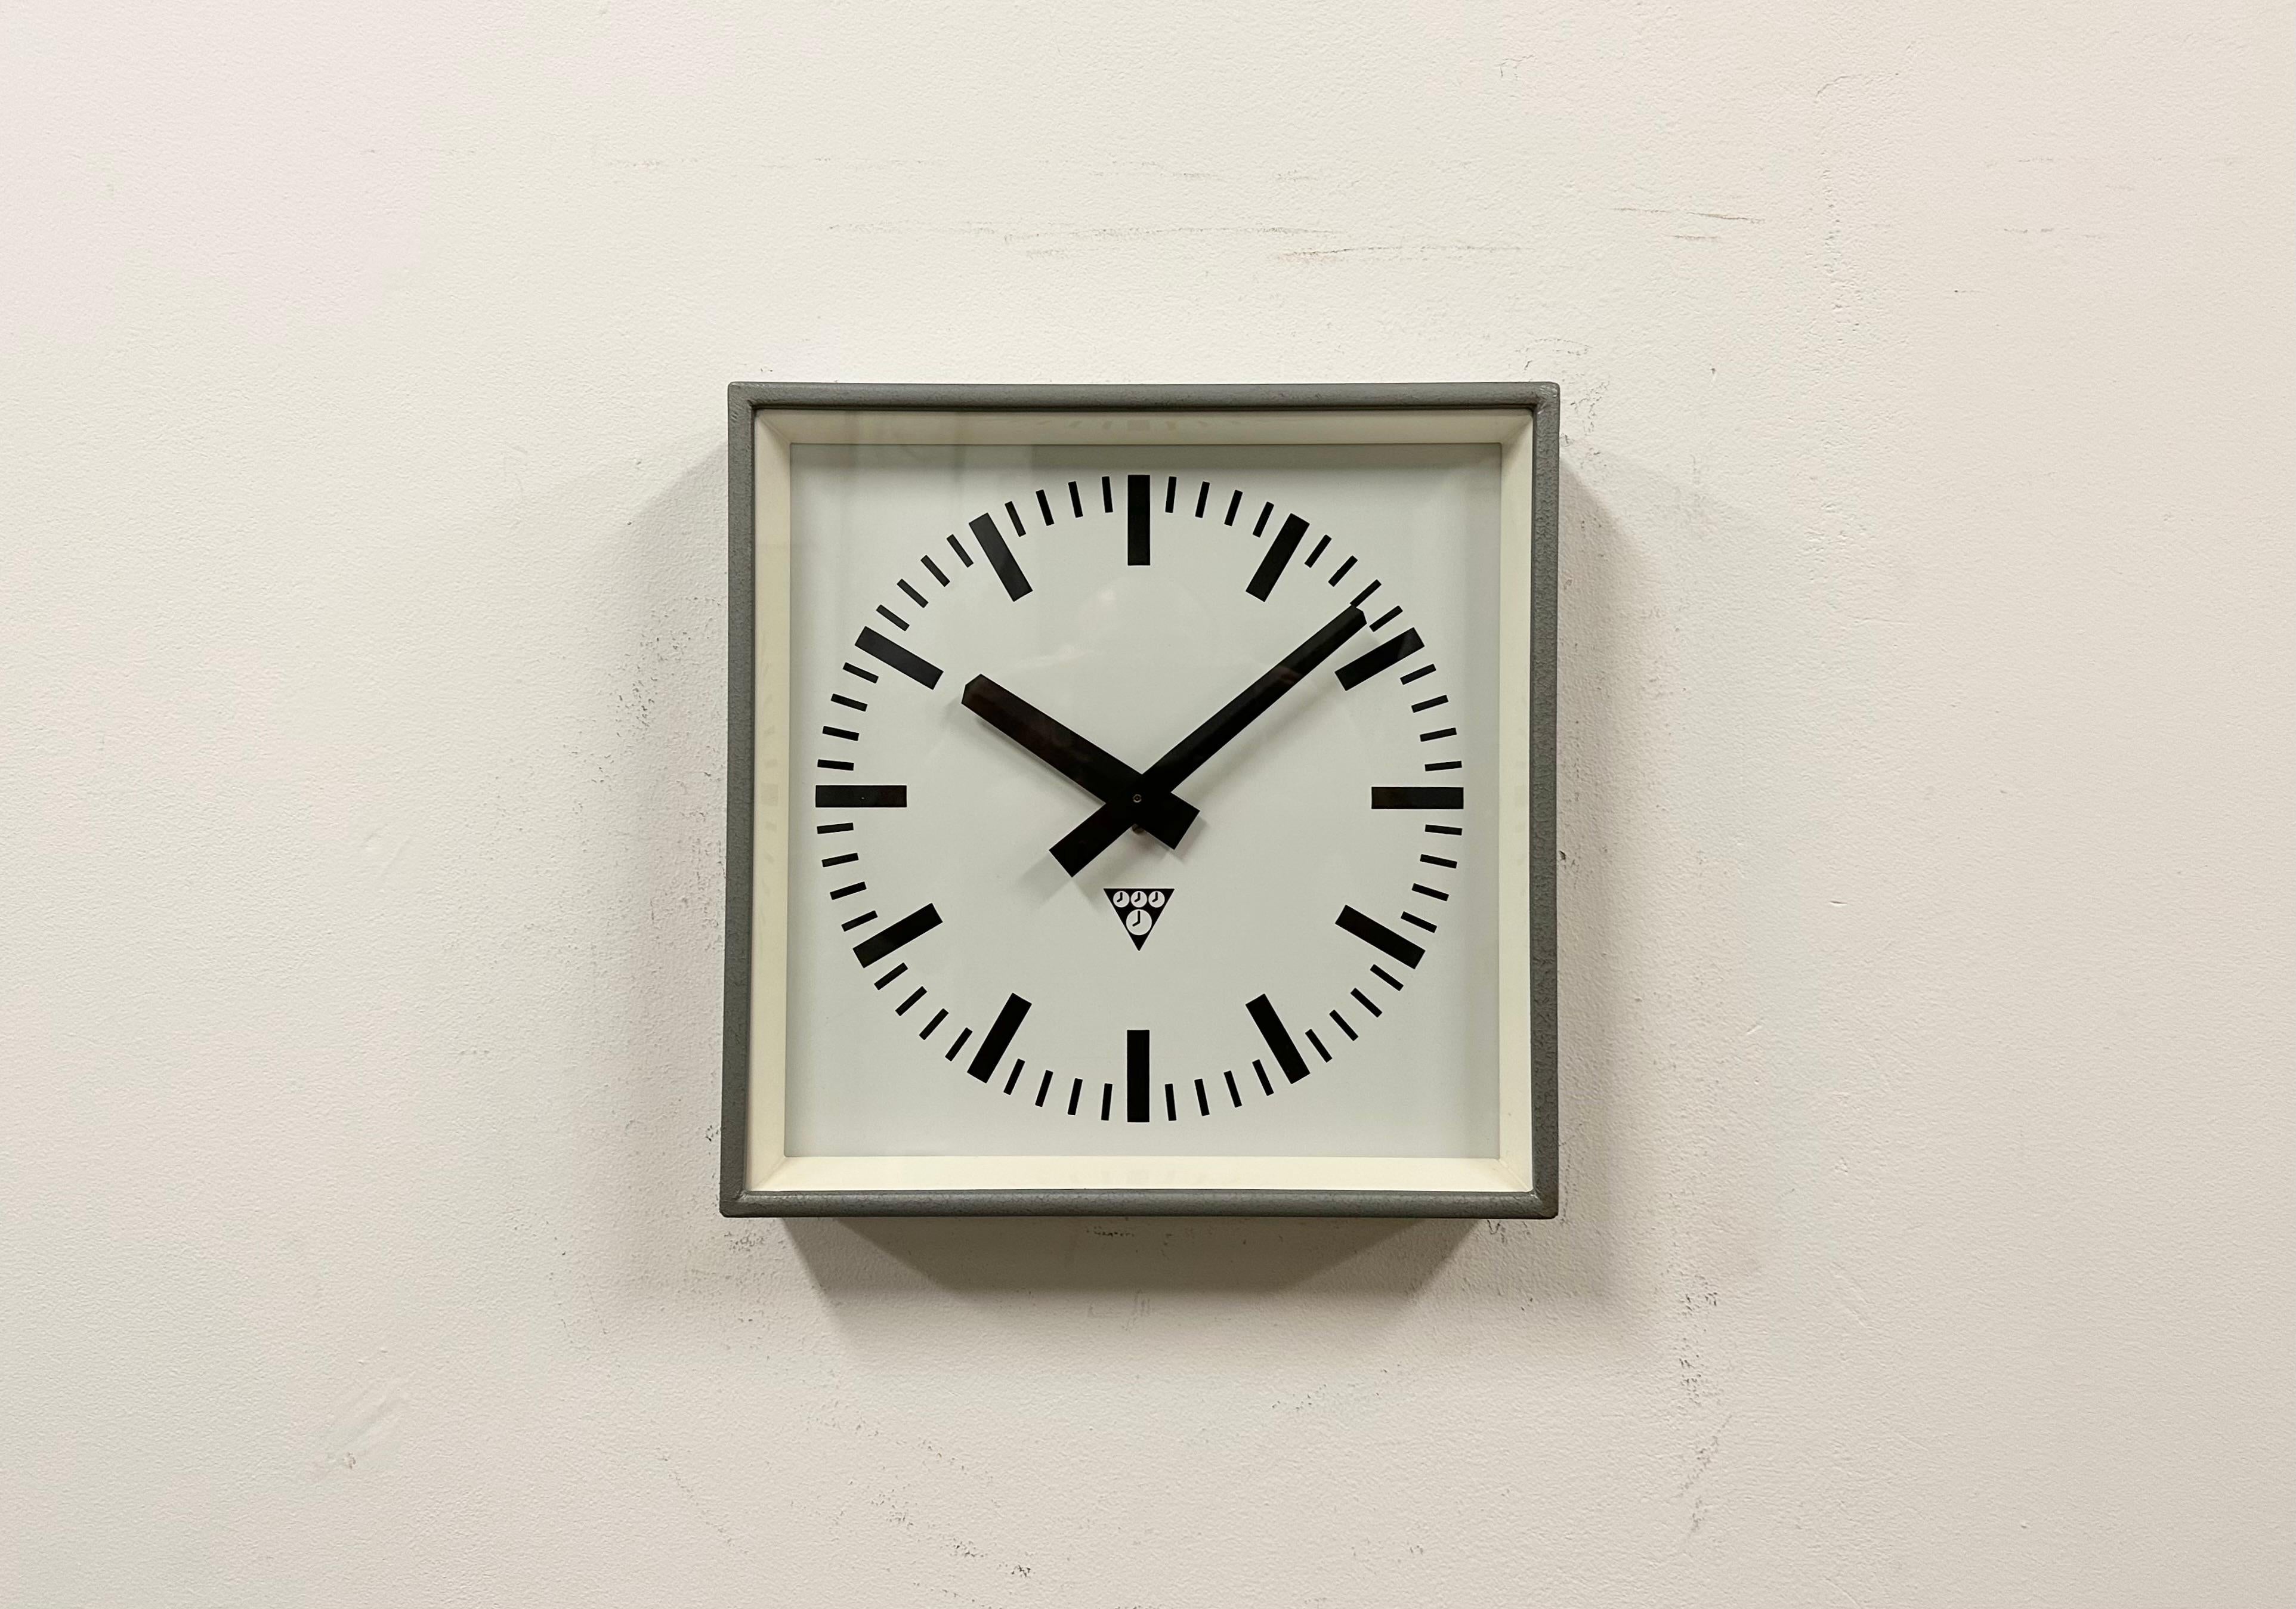 - Horloge murale conçue par Pragotron dans l'ancienne Tchécoslovaquie au cours des années 1970 et fabriquée jusque dans les années 1990.
- Utilisé dans les usines, les écoles et les gares. 
- Cadre en métal peint au marteau gris 
- Cadran et